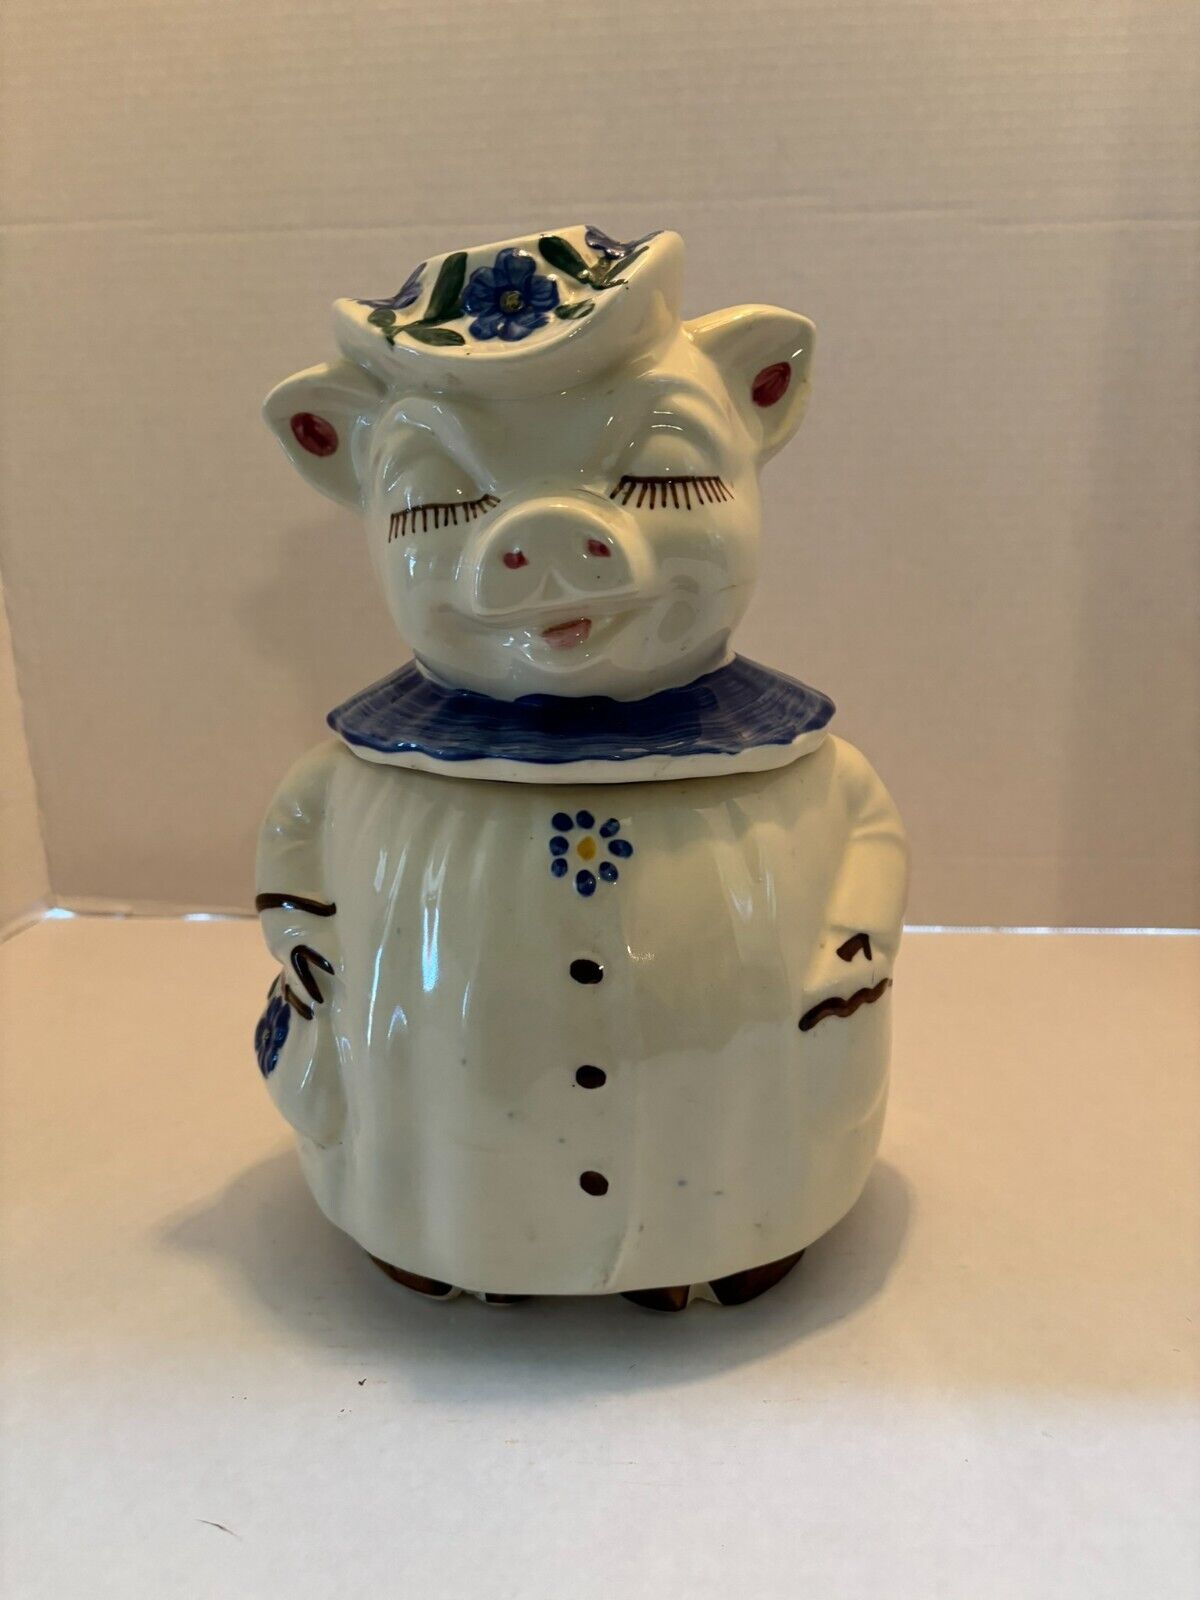 Shawnee Smiley Pig Vintage cookie jar by the Winnie company